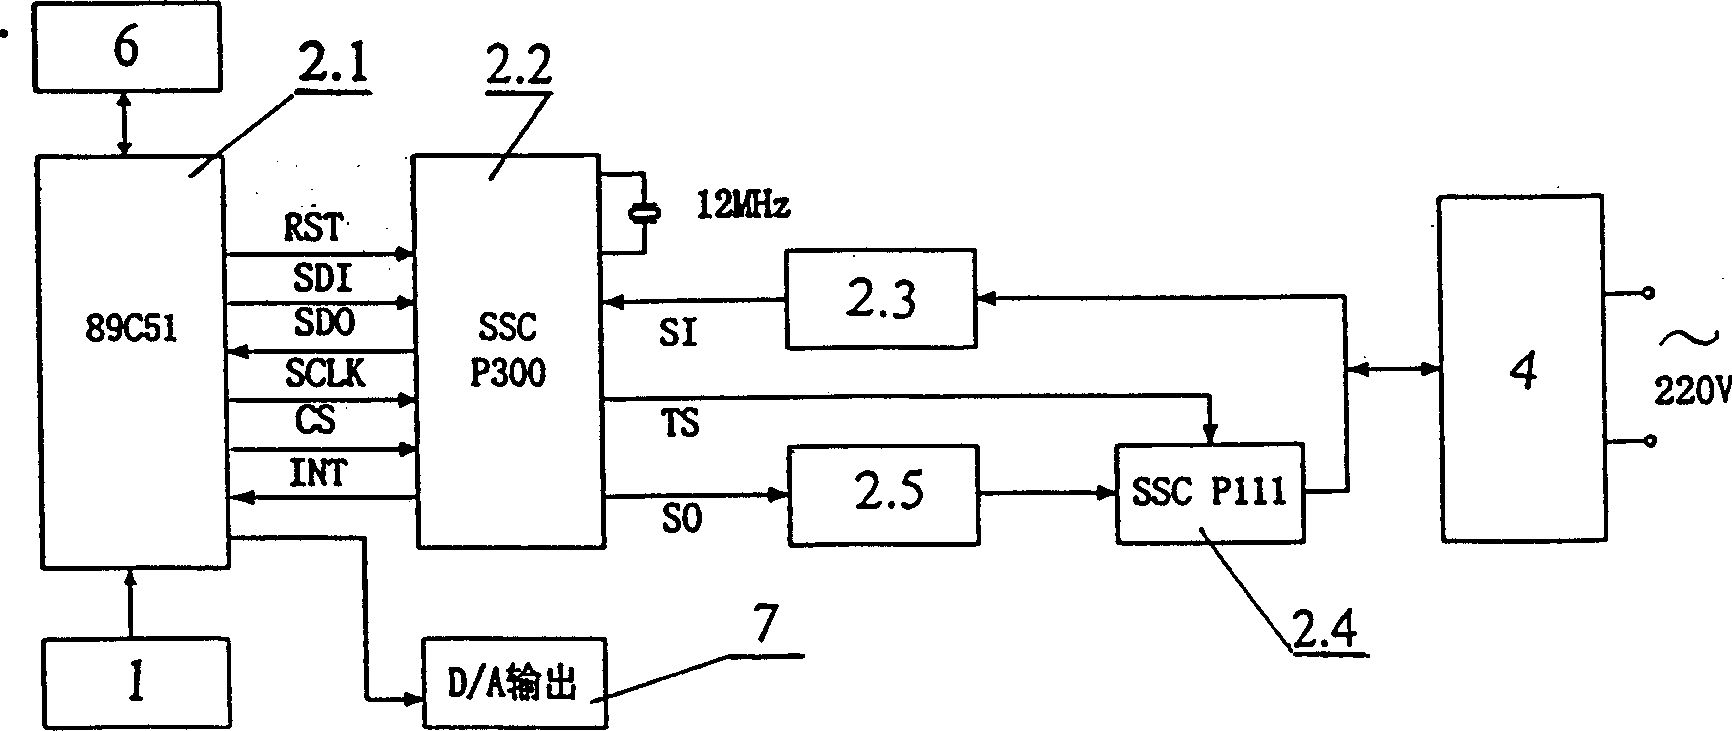 Bidirectional two-line intelligent valve